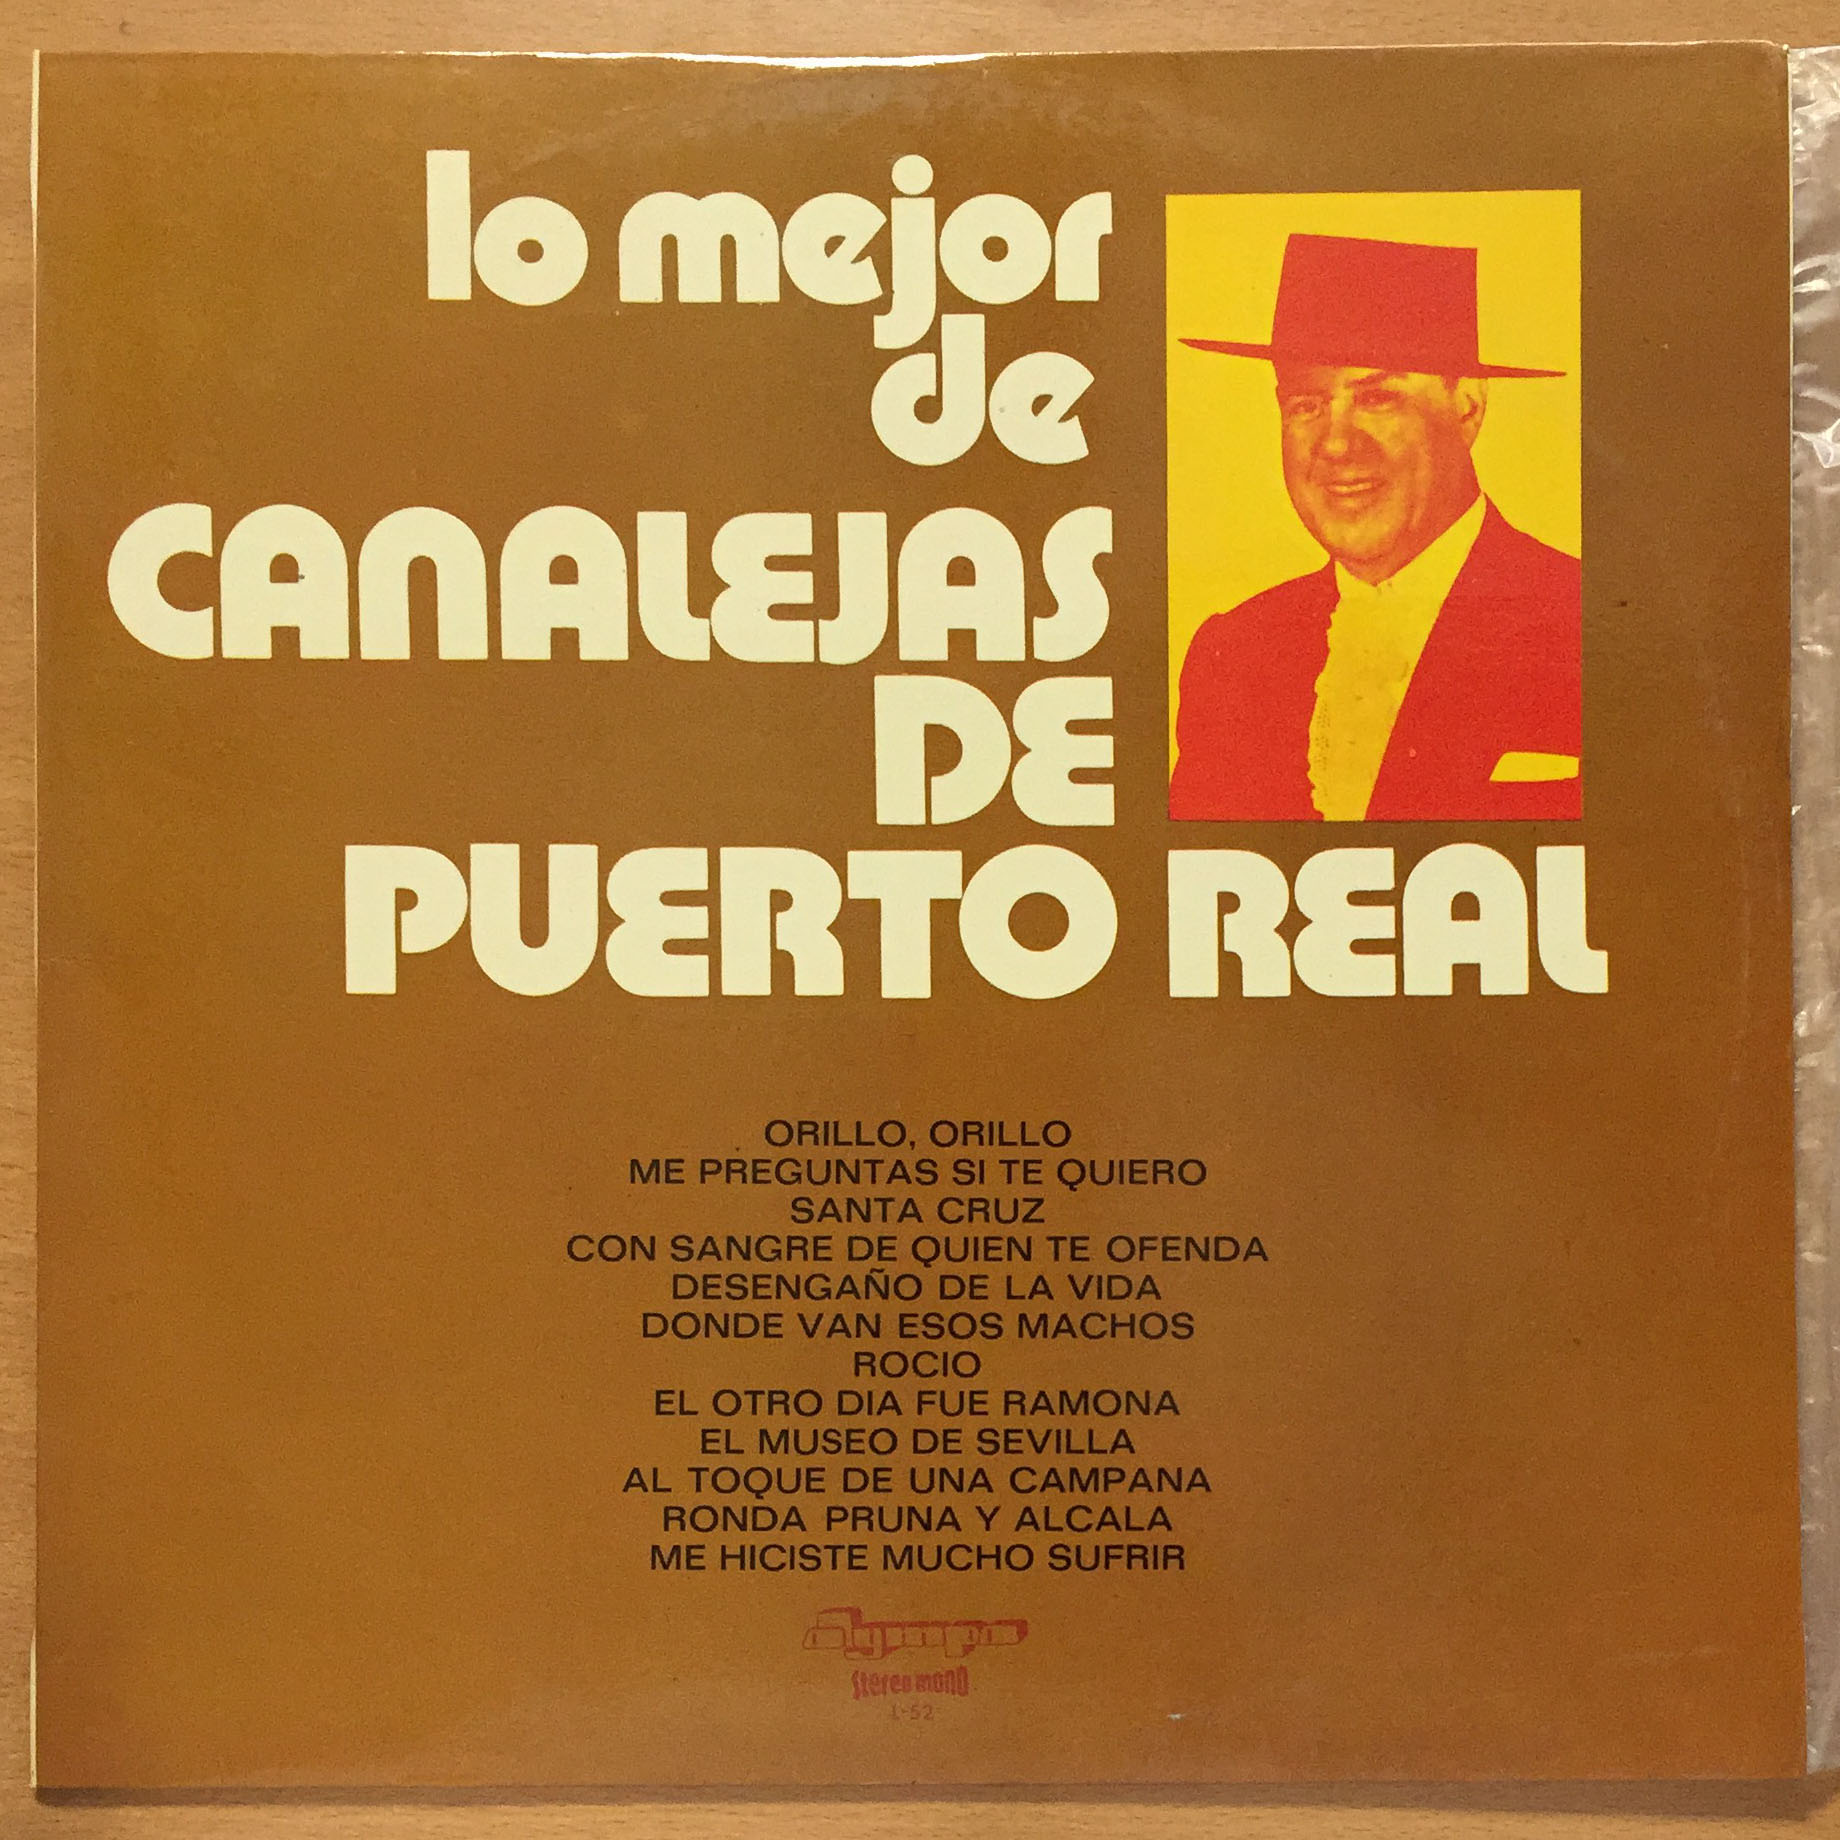 VVAA-Lo mejor de Canalejas de Puerto Real. 1972 Olympo